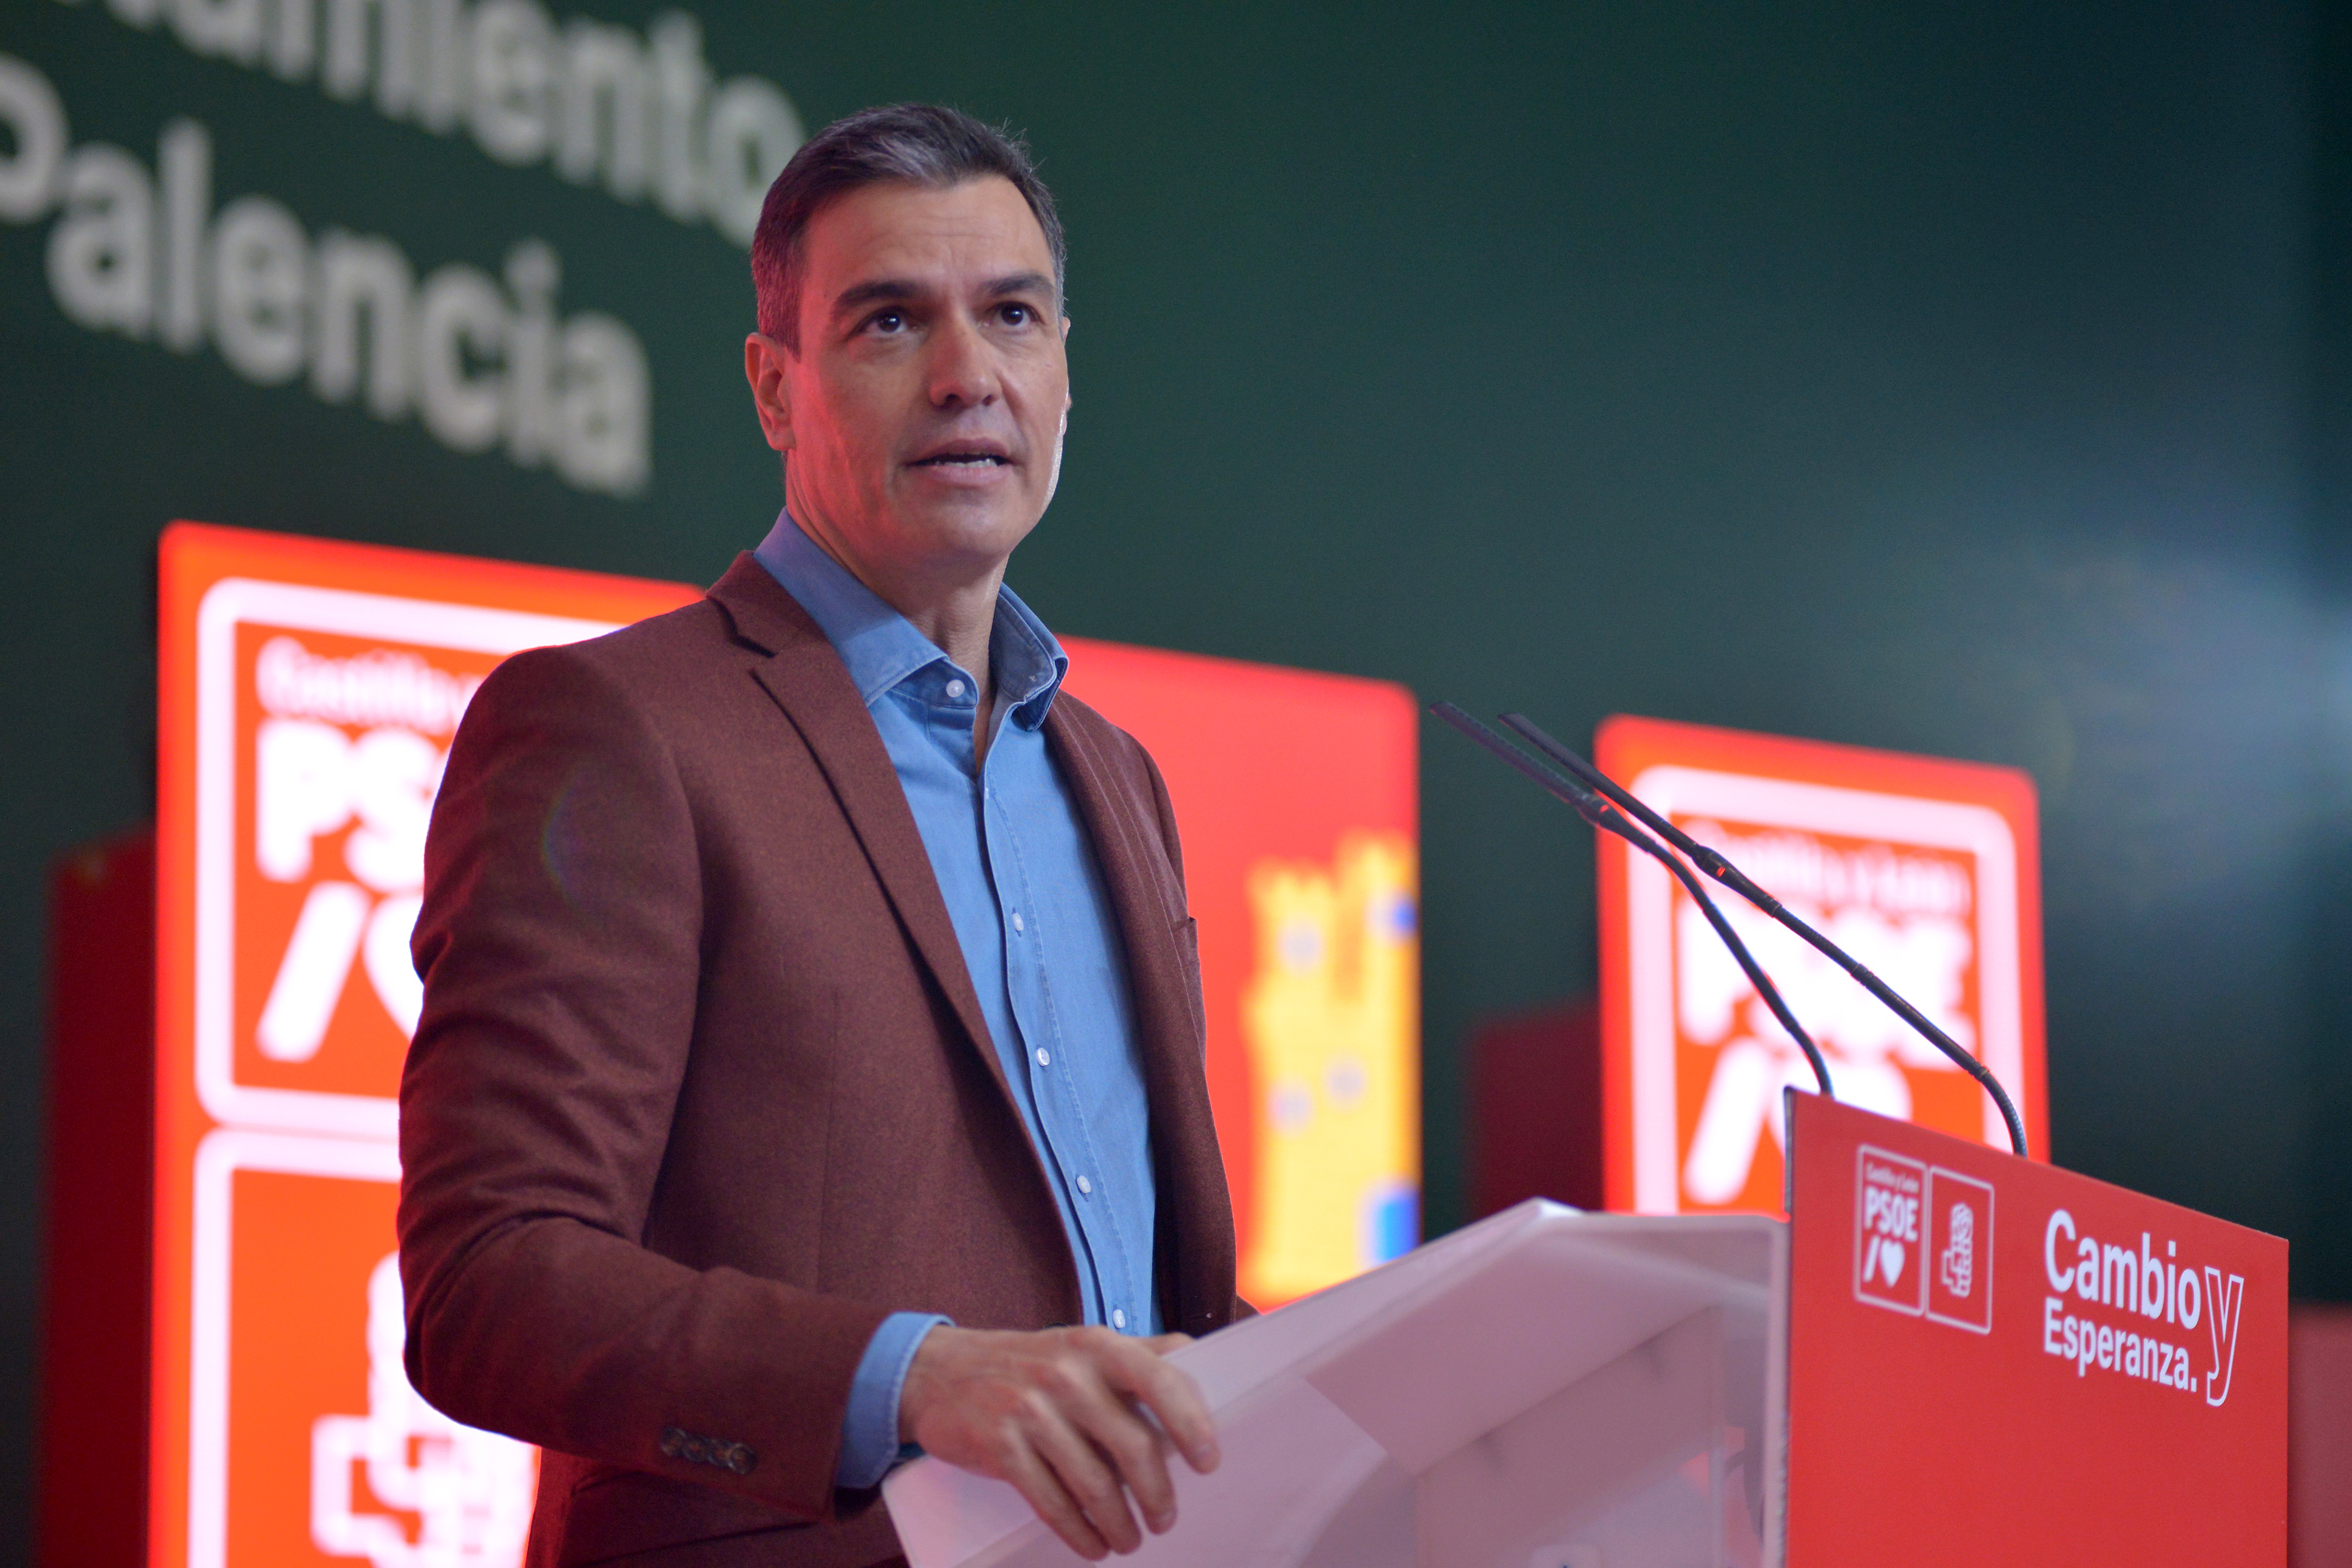 El escándalo pone en aprietos al partido del presidente del gobierno español, Pedro Sánchez (Photogenic/Claudia Alba - Europa Press)
